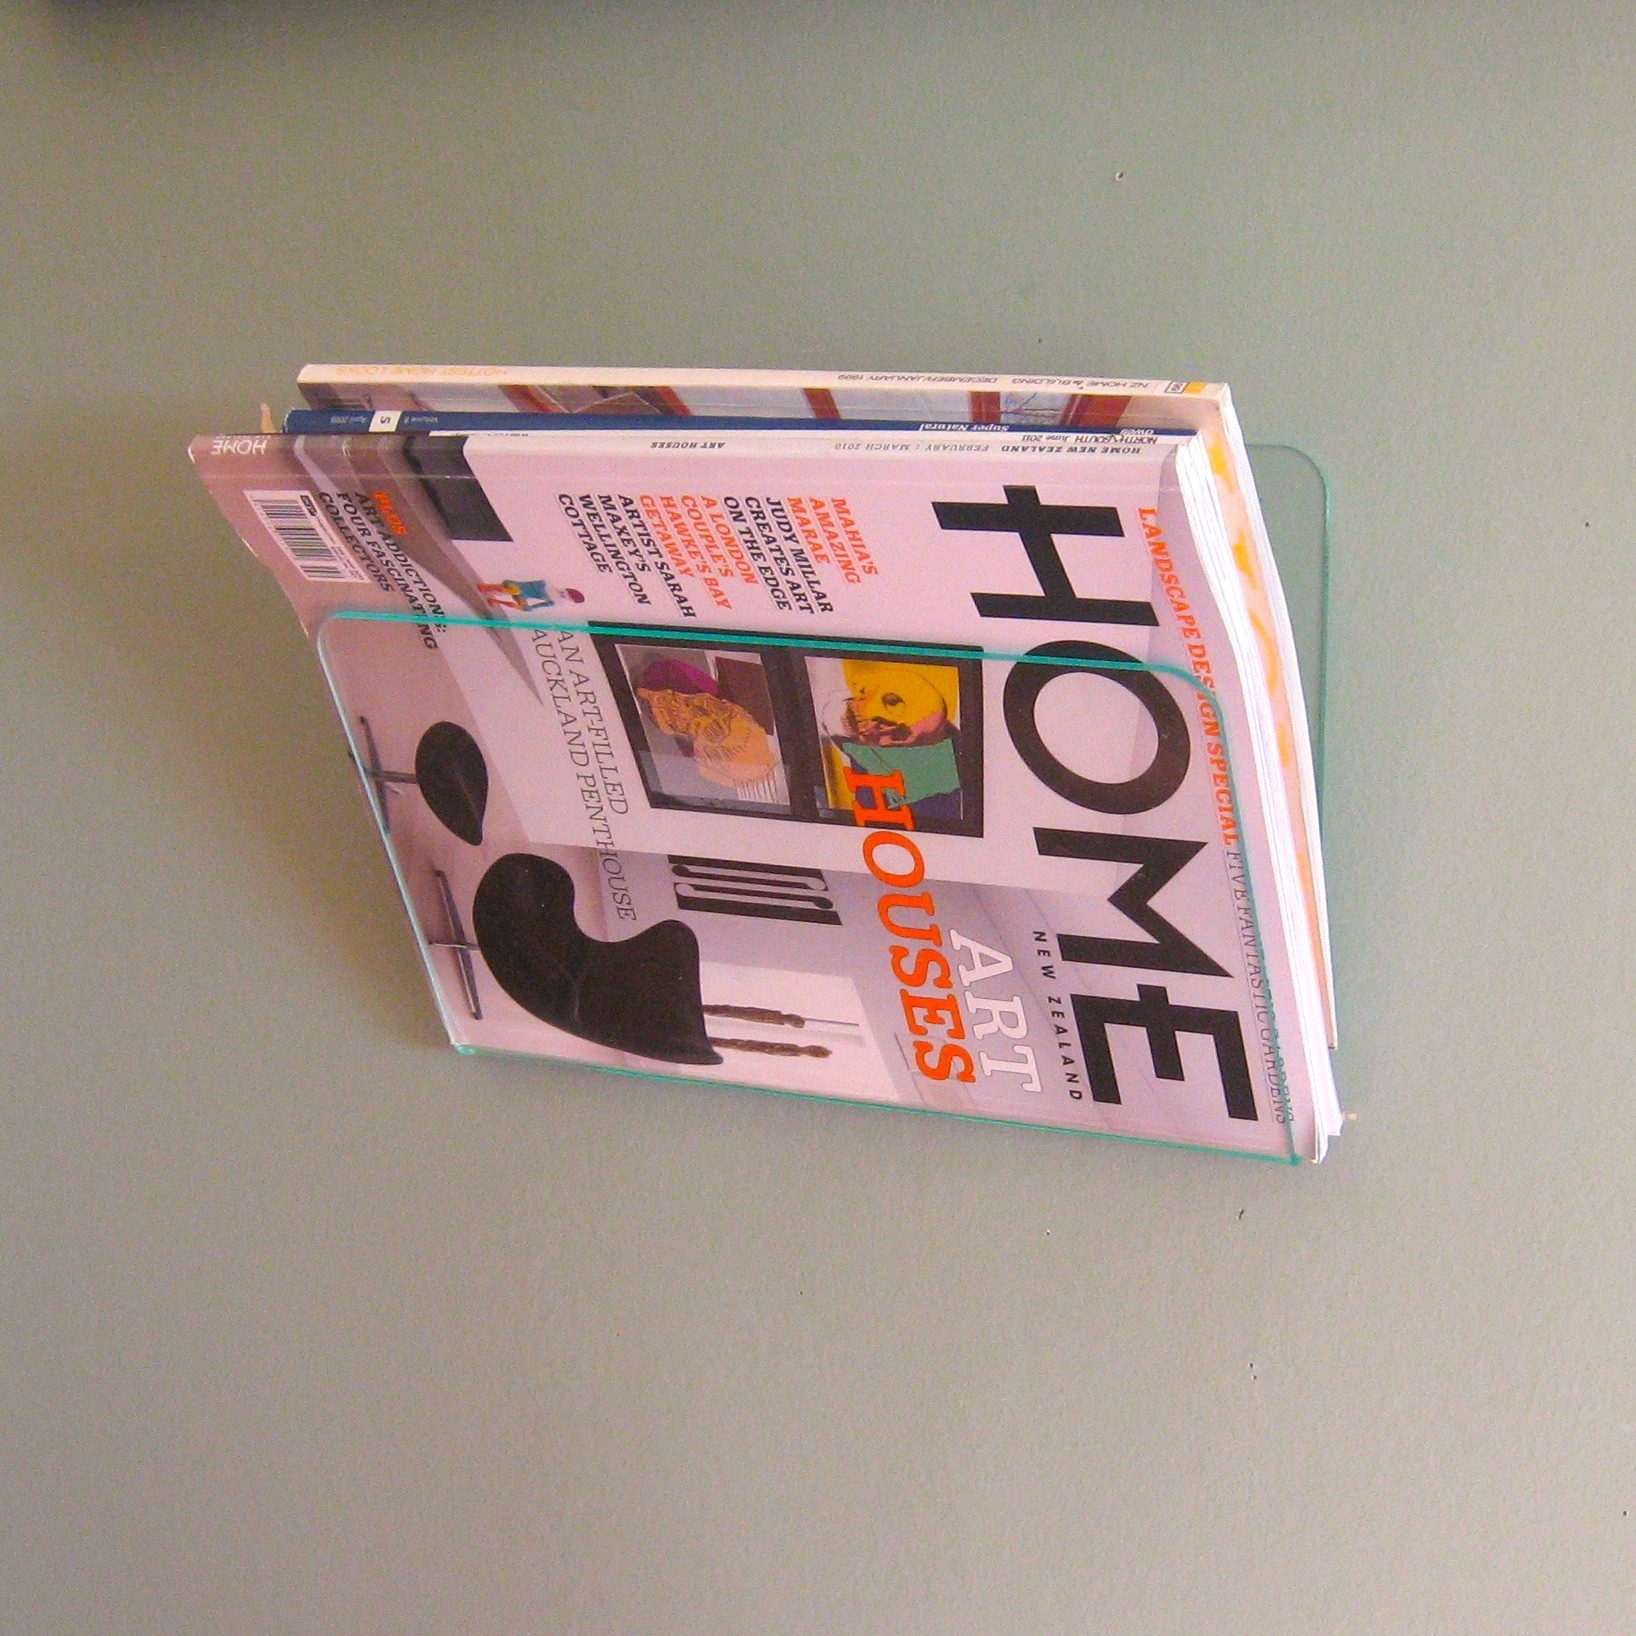 Wall mount bathroom magazine rack